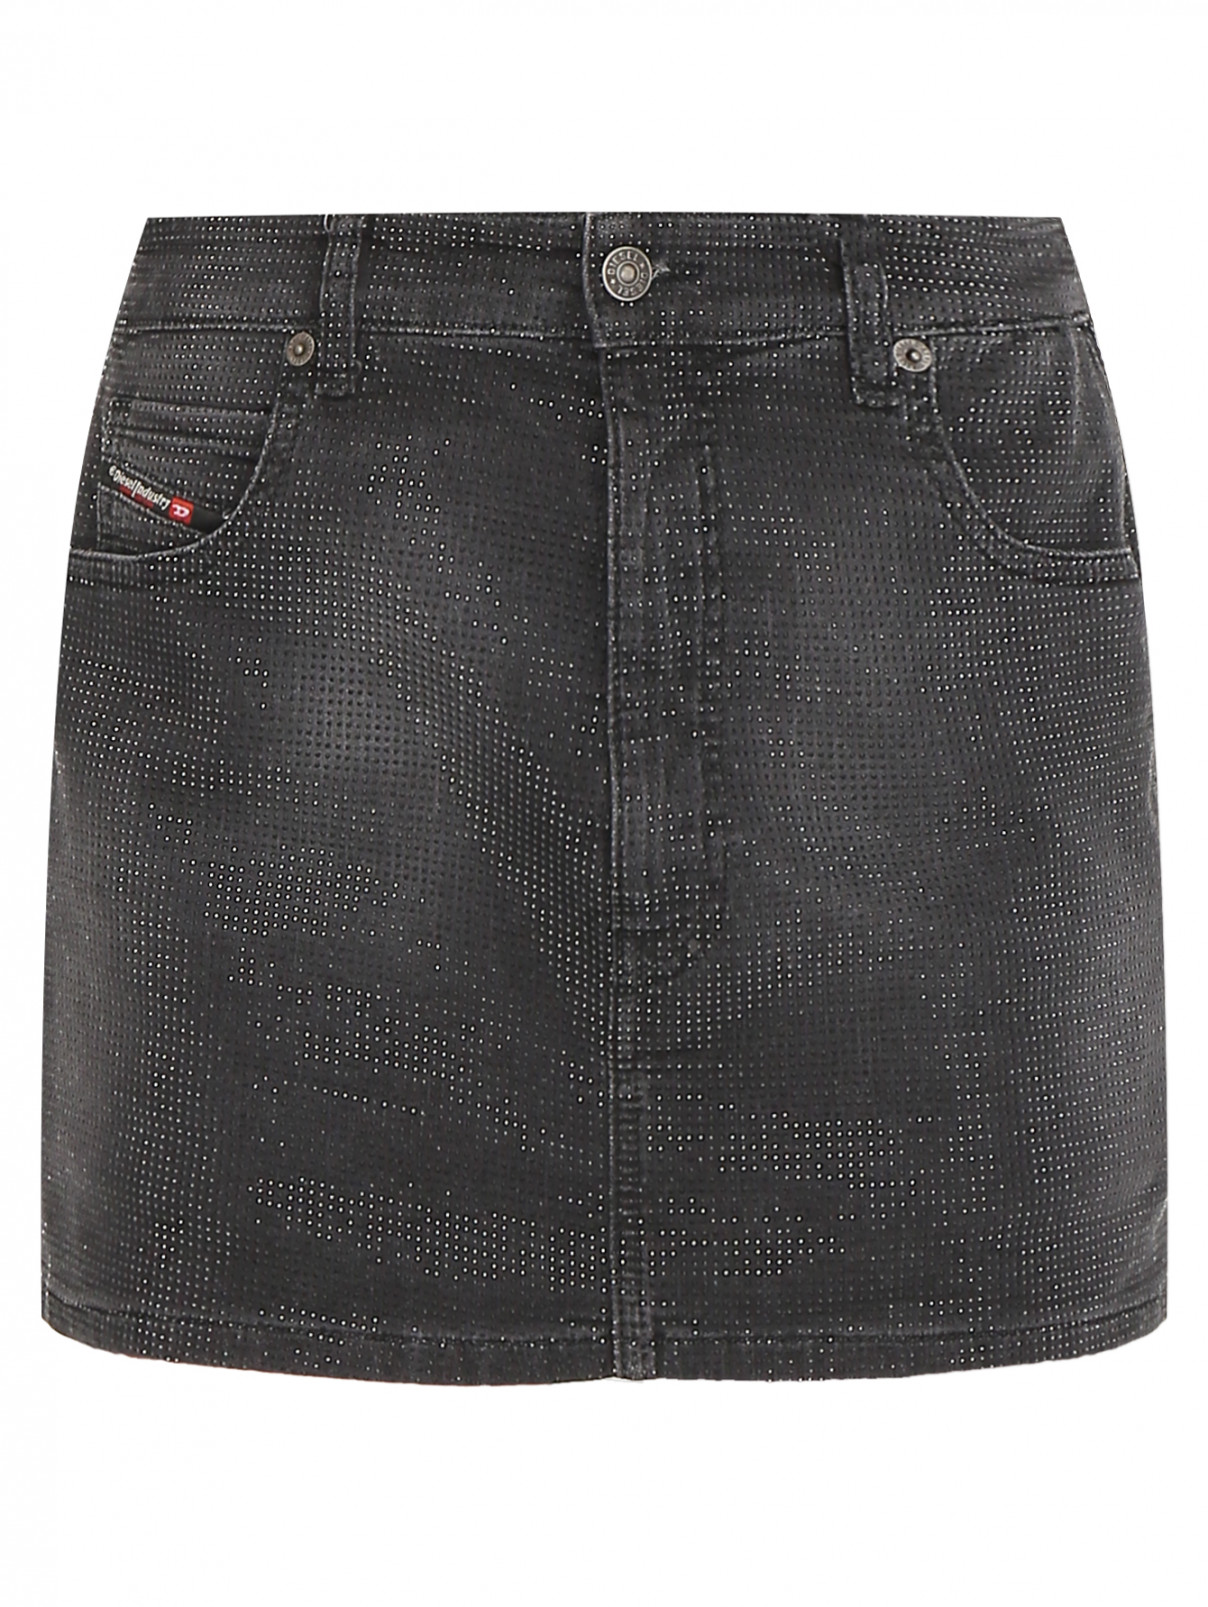 Джинсовая юбка-шорты Diesel  –  Общий вид  – Цвет:  Серый